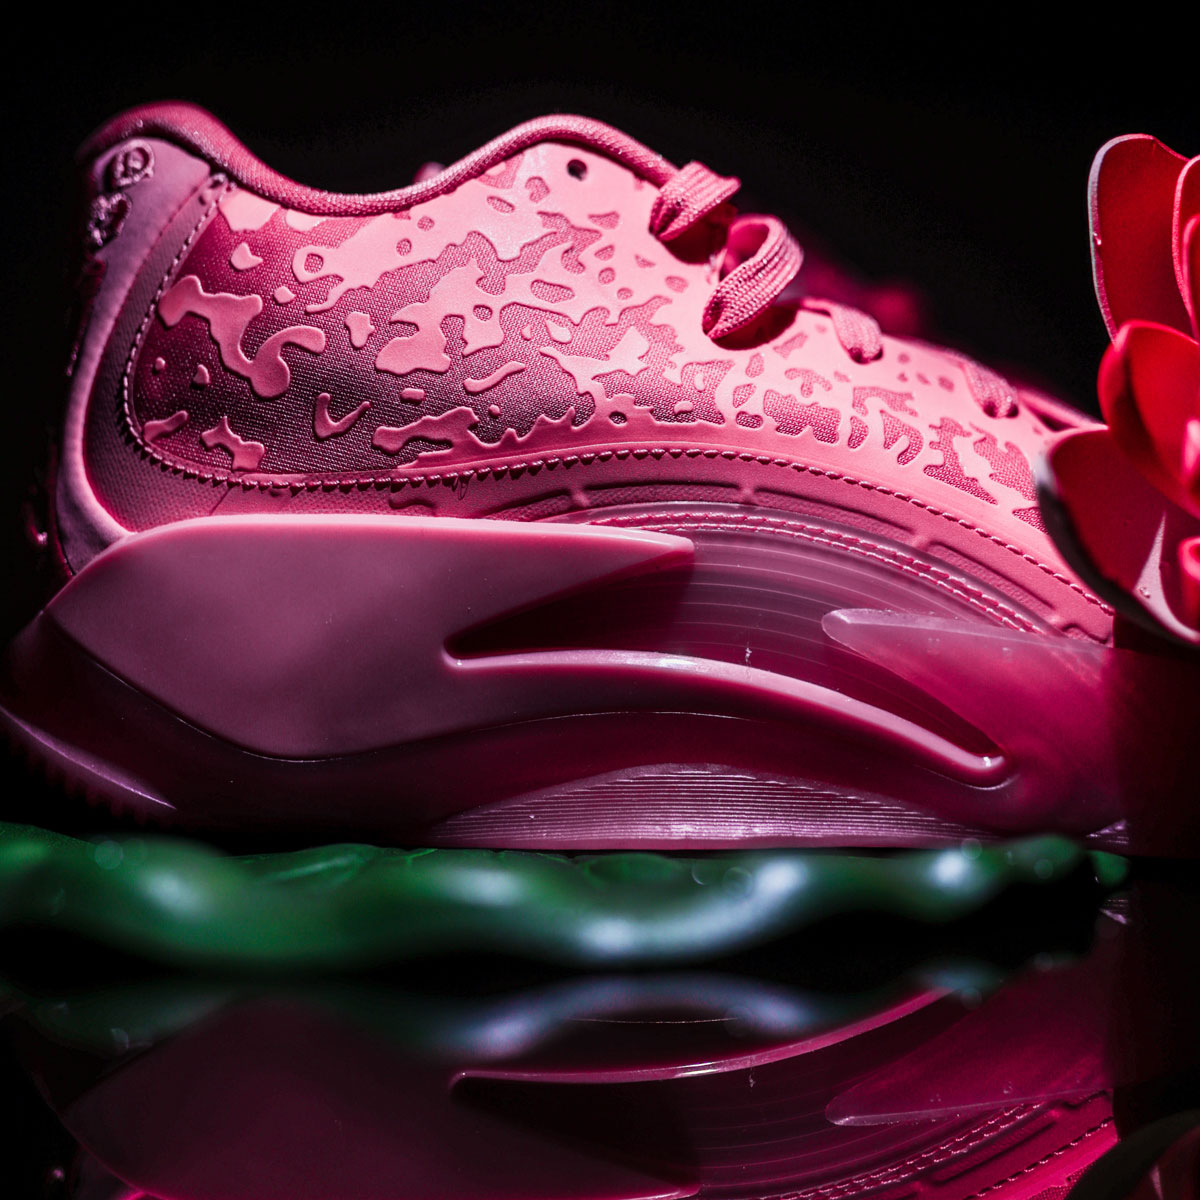 Nigel Sylvester × Nike Claquette Jordan Sophia pour Femme Gris 29cm Pink Lotus Dr0675 600 Release Date 4